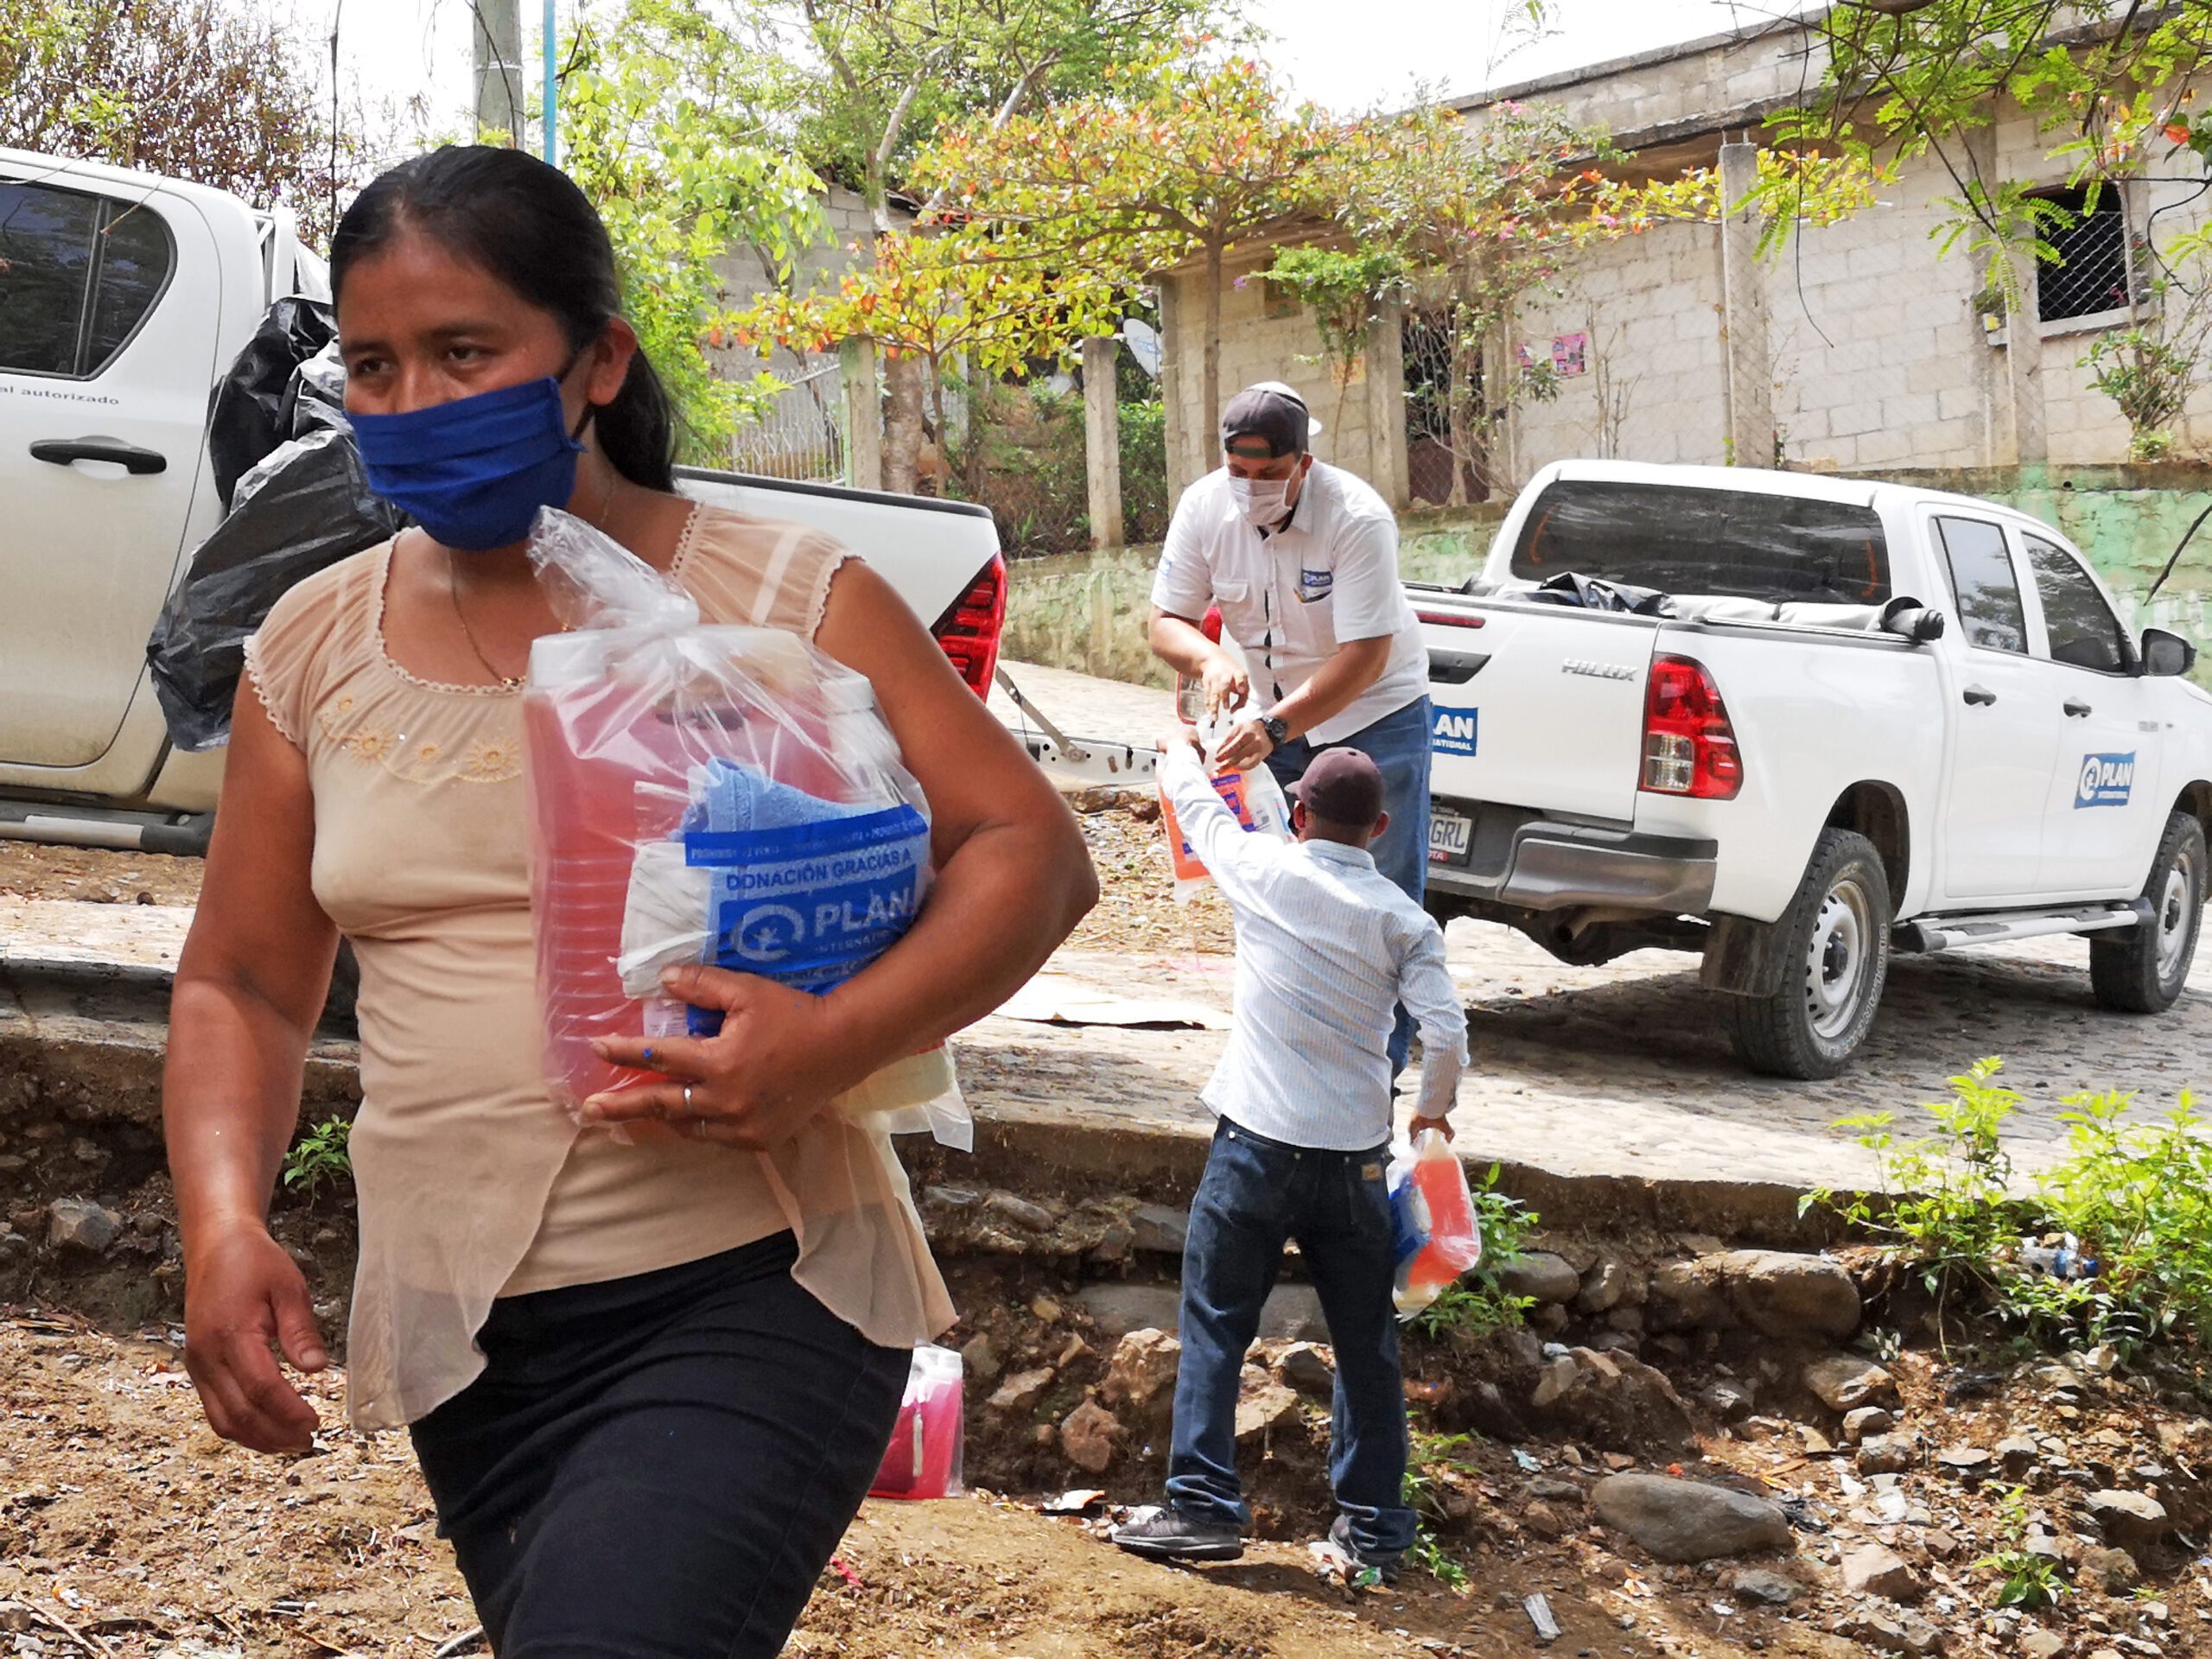 En el día de la asistencia humanitaria, Plan International reconoce el esfuerzo del trabajador humanitario